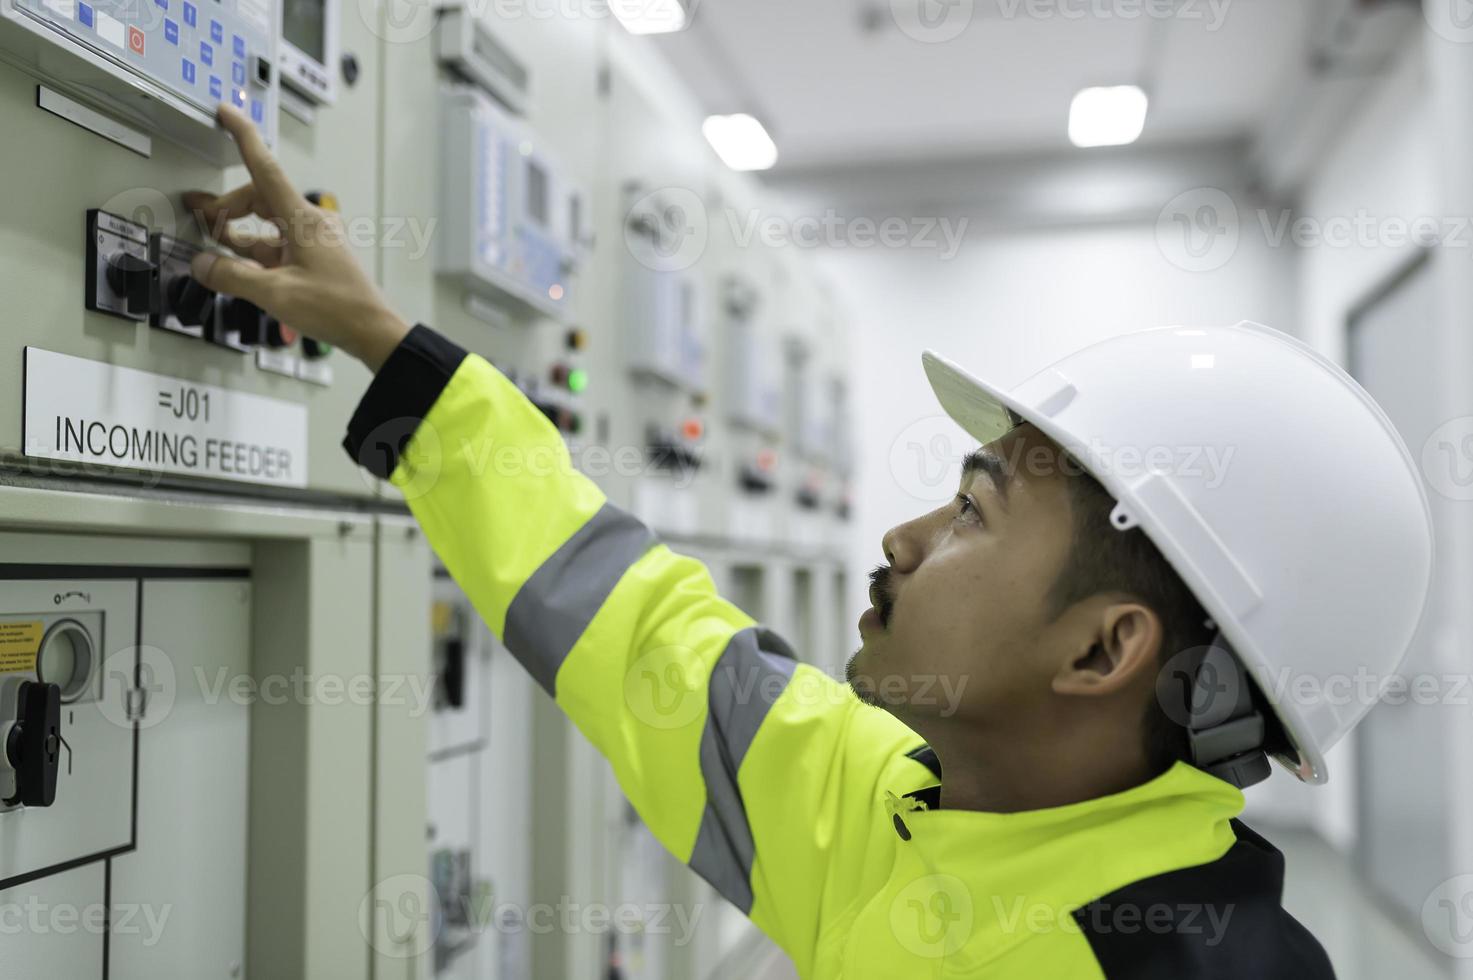 elektroingenieurmann, der die spannung am stromverteilerschrank im kontrollraum überprüft, jährliche vorbeugende wartung, thailand-elektriker, der im unternehmen arbeitet foto